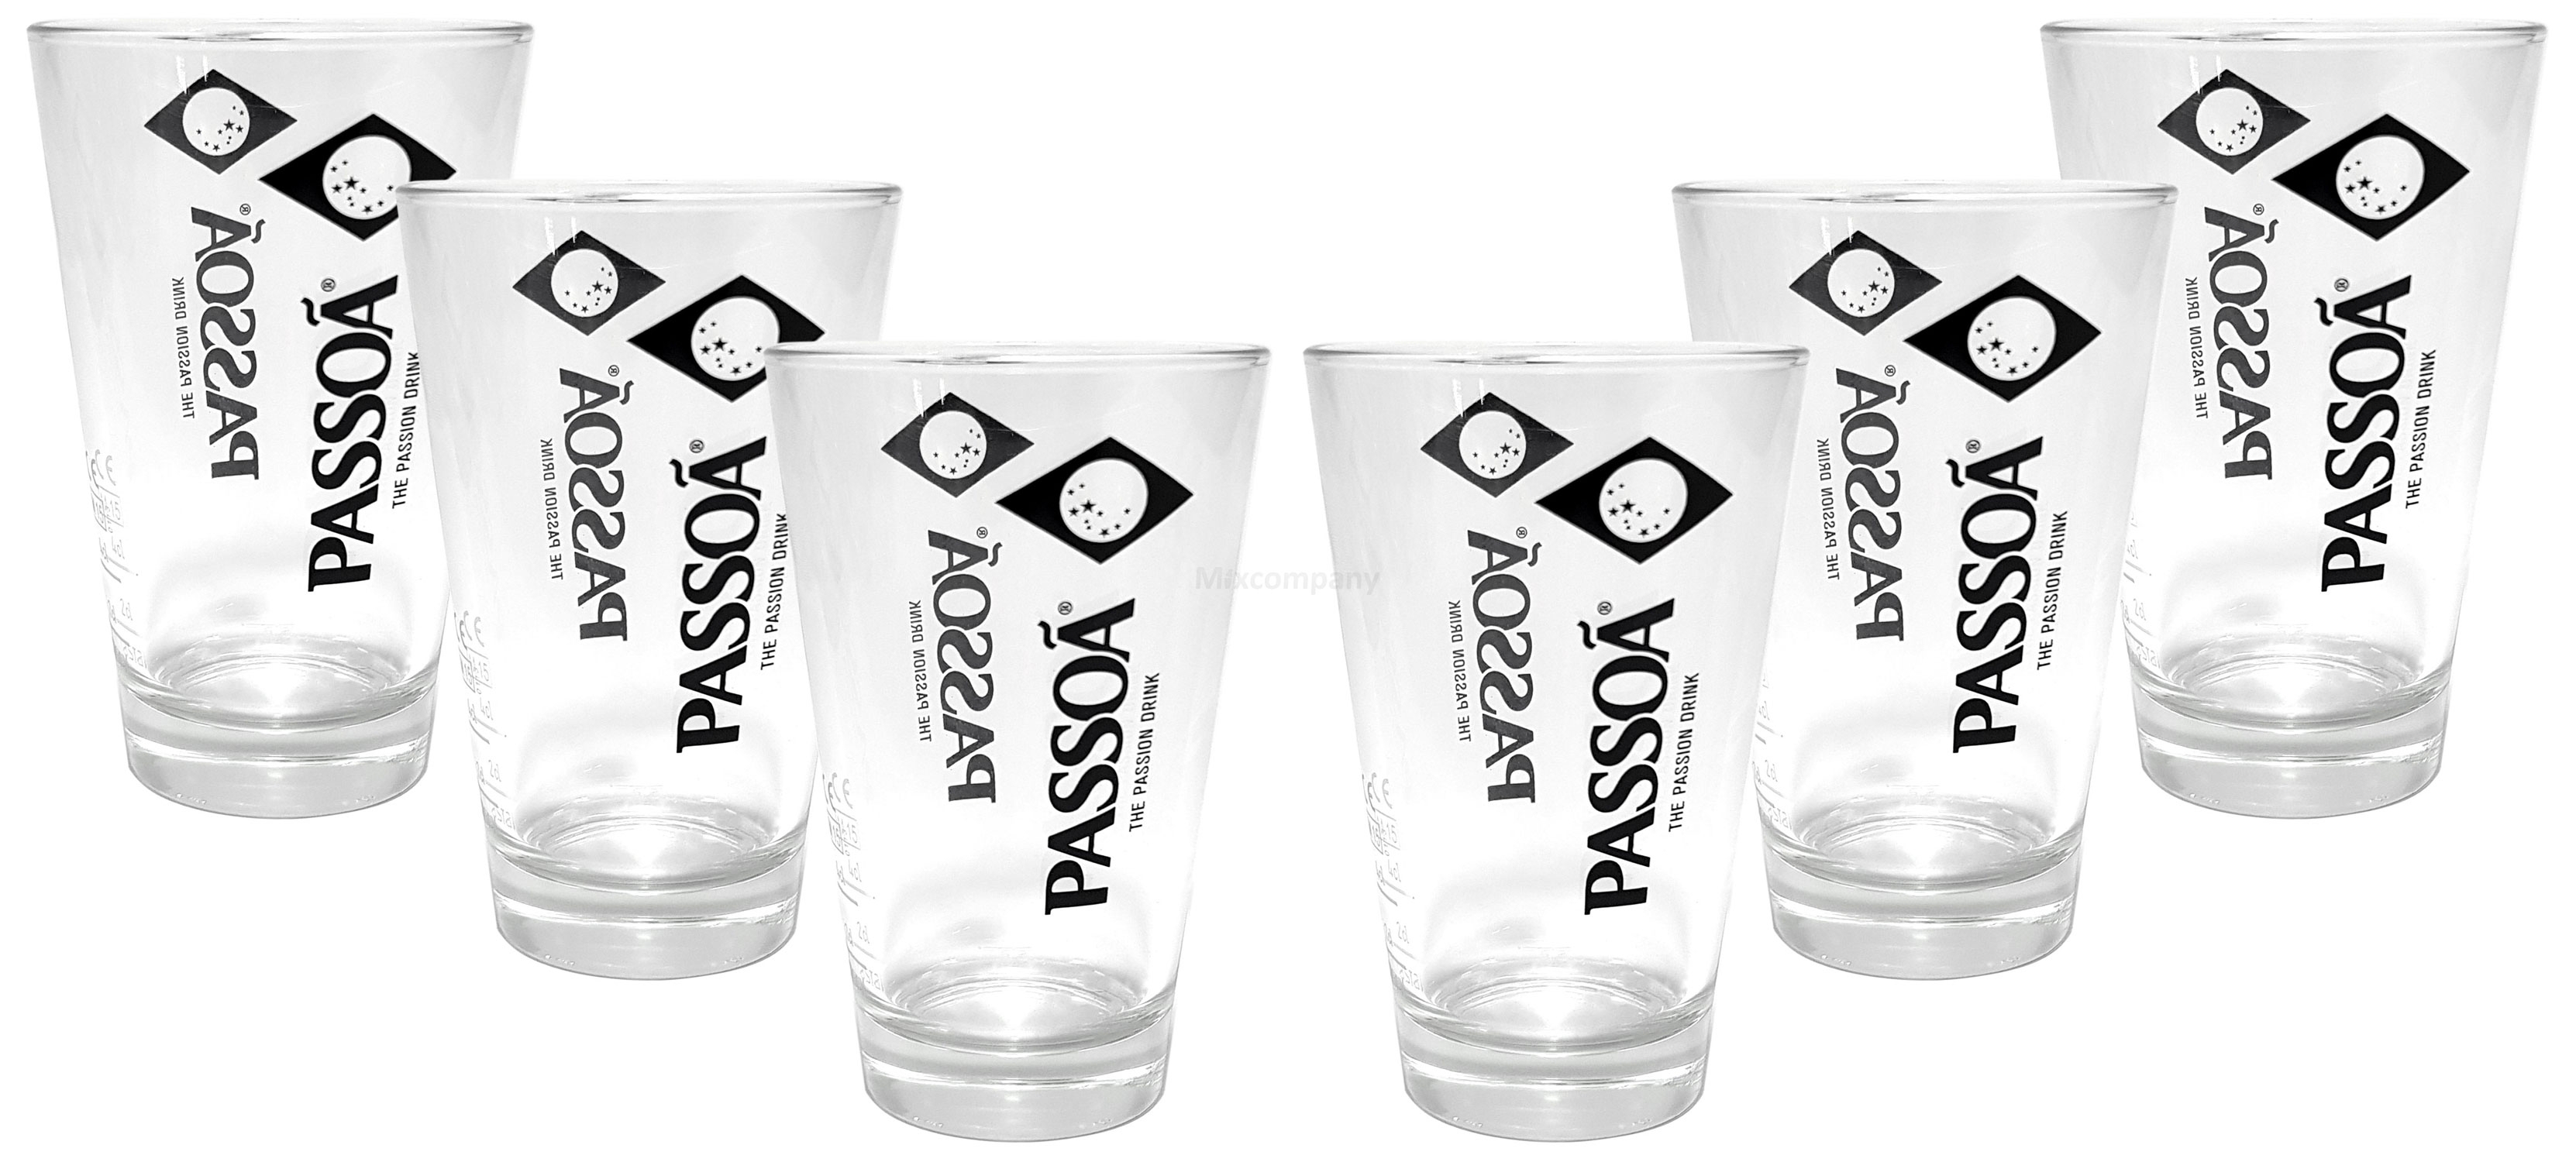 Passoa Glas Gläserset - 6x Gläser Longdrink